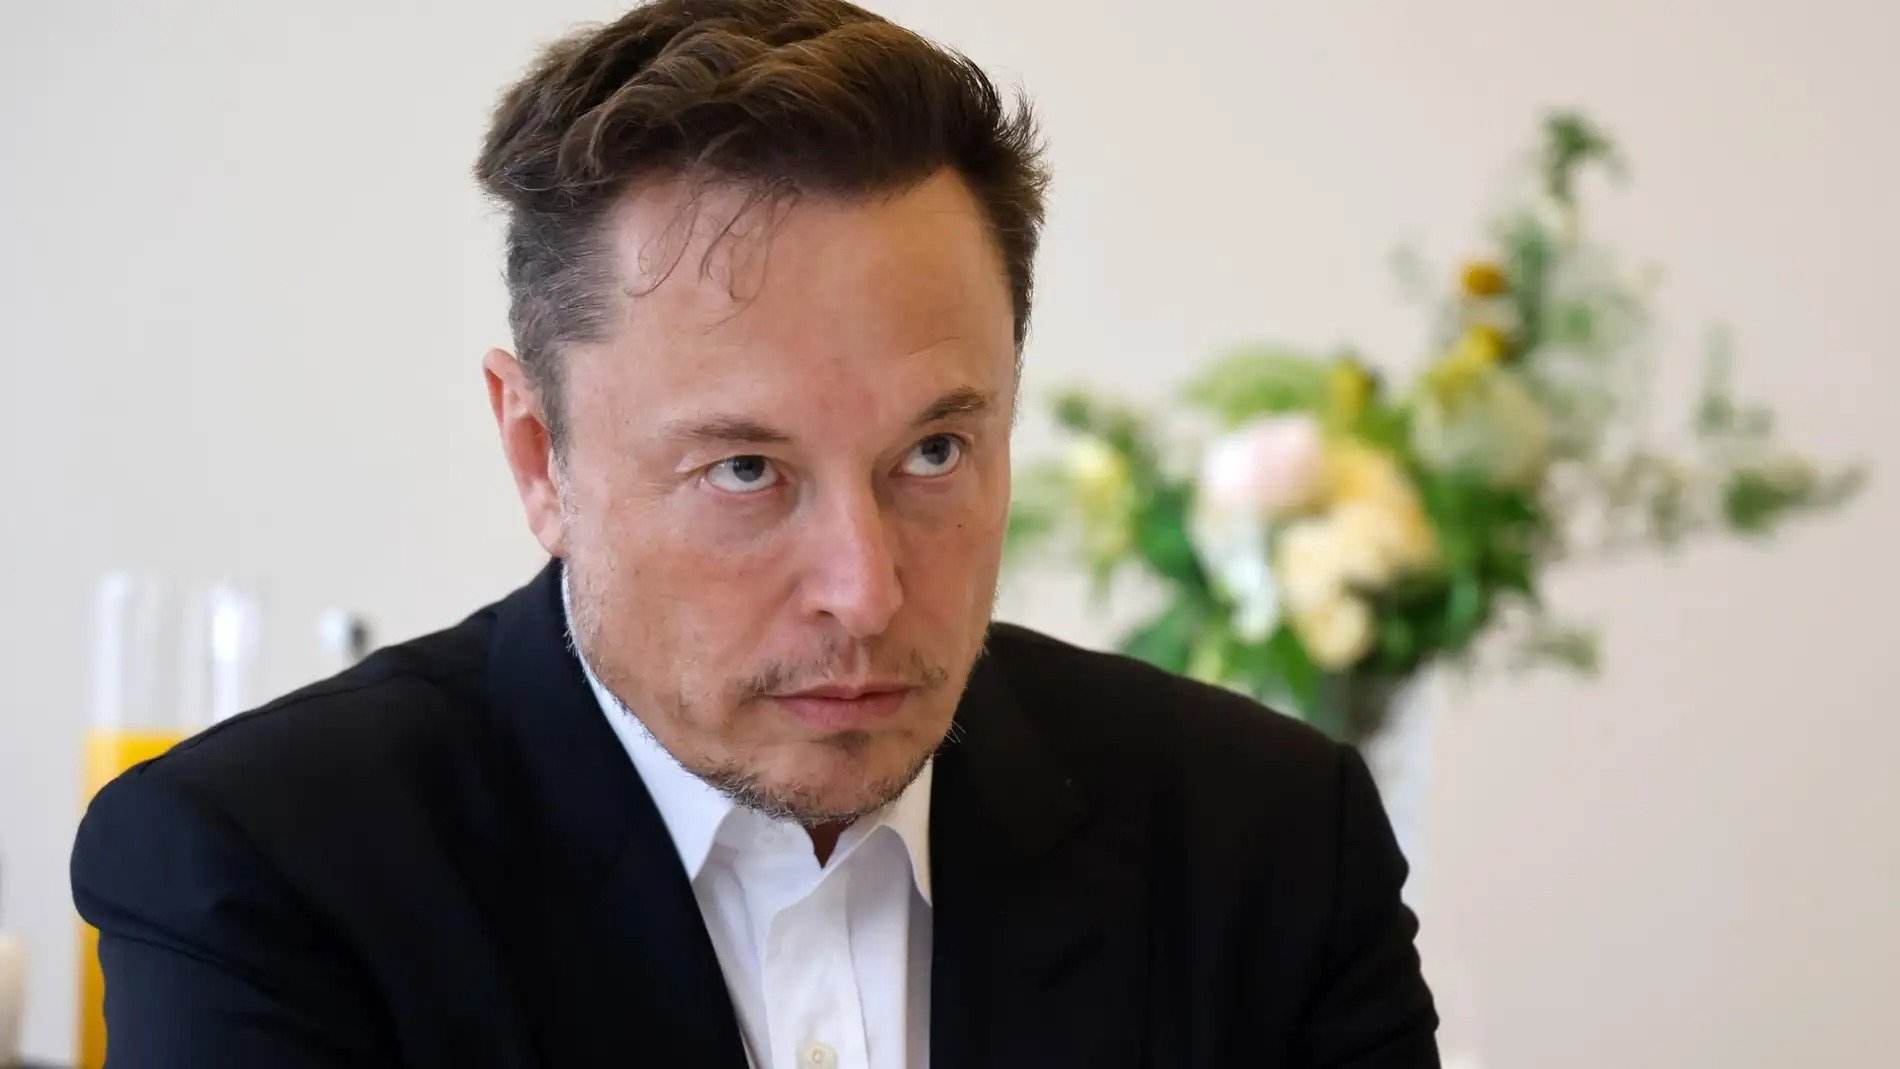 Una empresa de Elon Musk asegura que ha implantado el primer chip cerebral en un humano